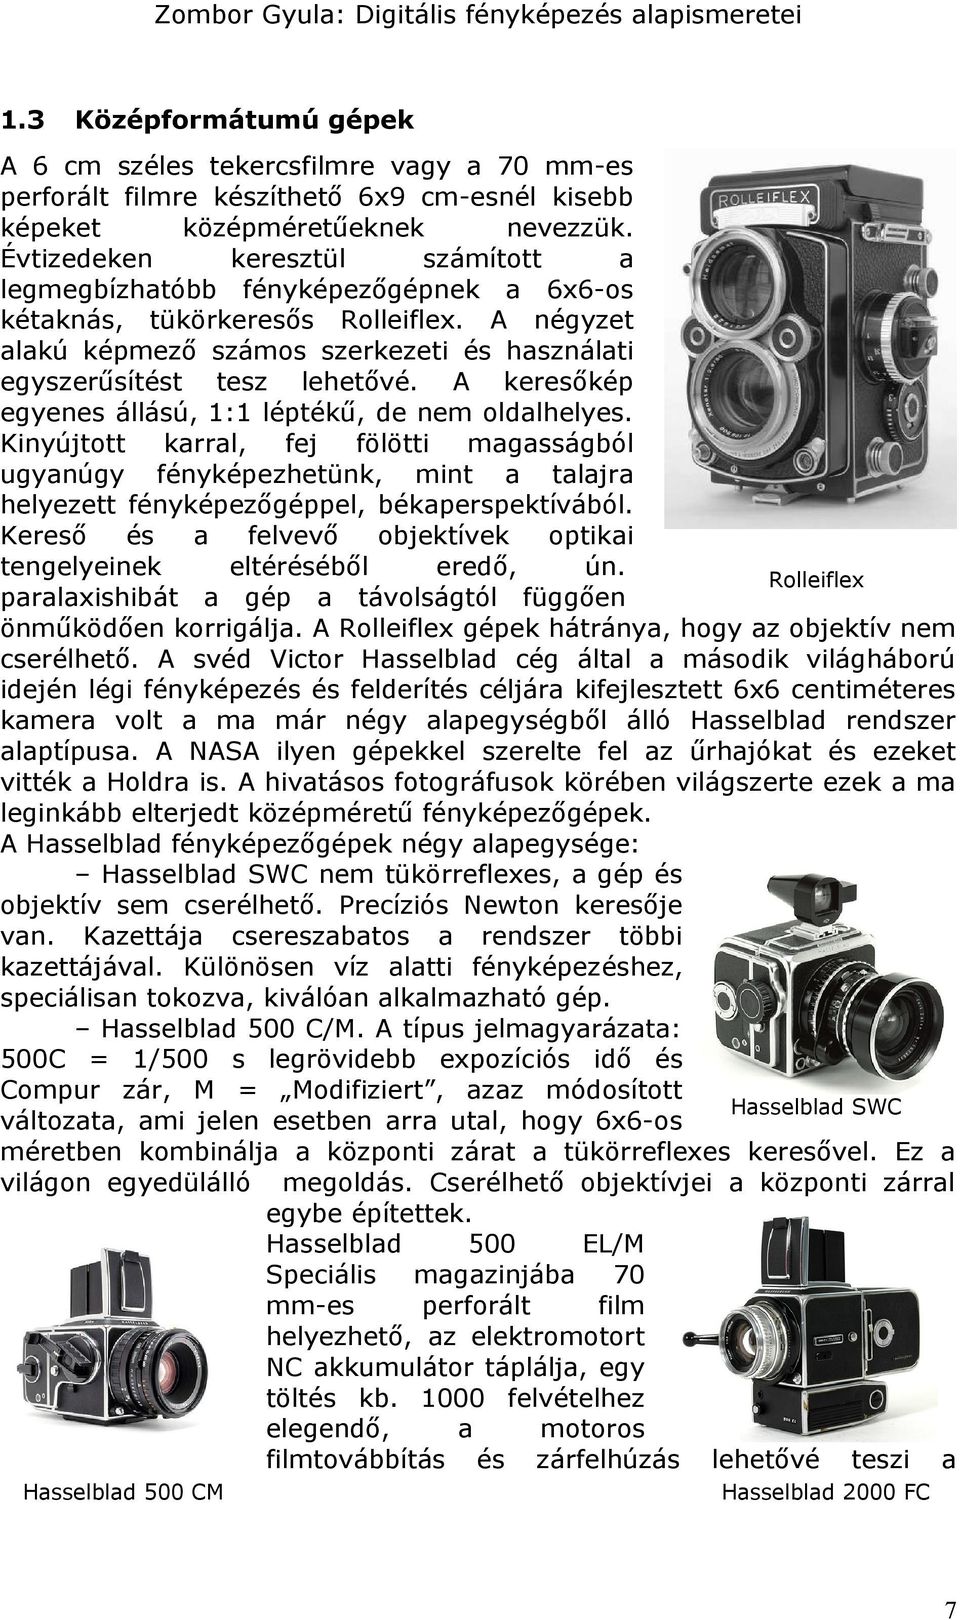 Digitális fényképezés alapismeretei. 1. modul Digitális fényképezés  alapismeretei - PDF Ingyenes letöltés